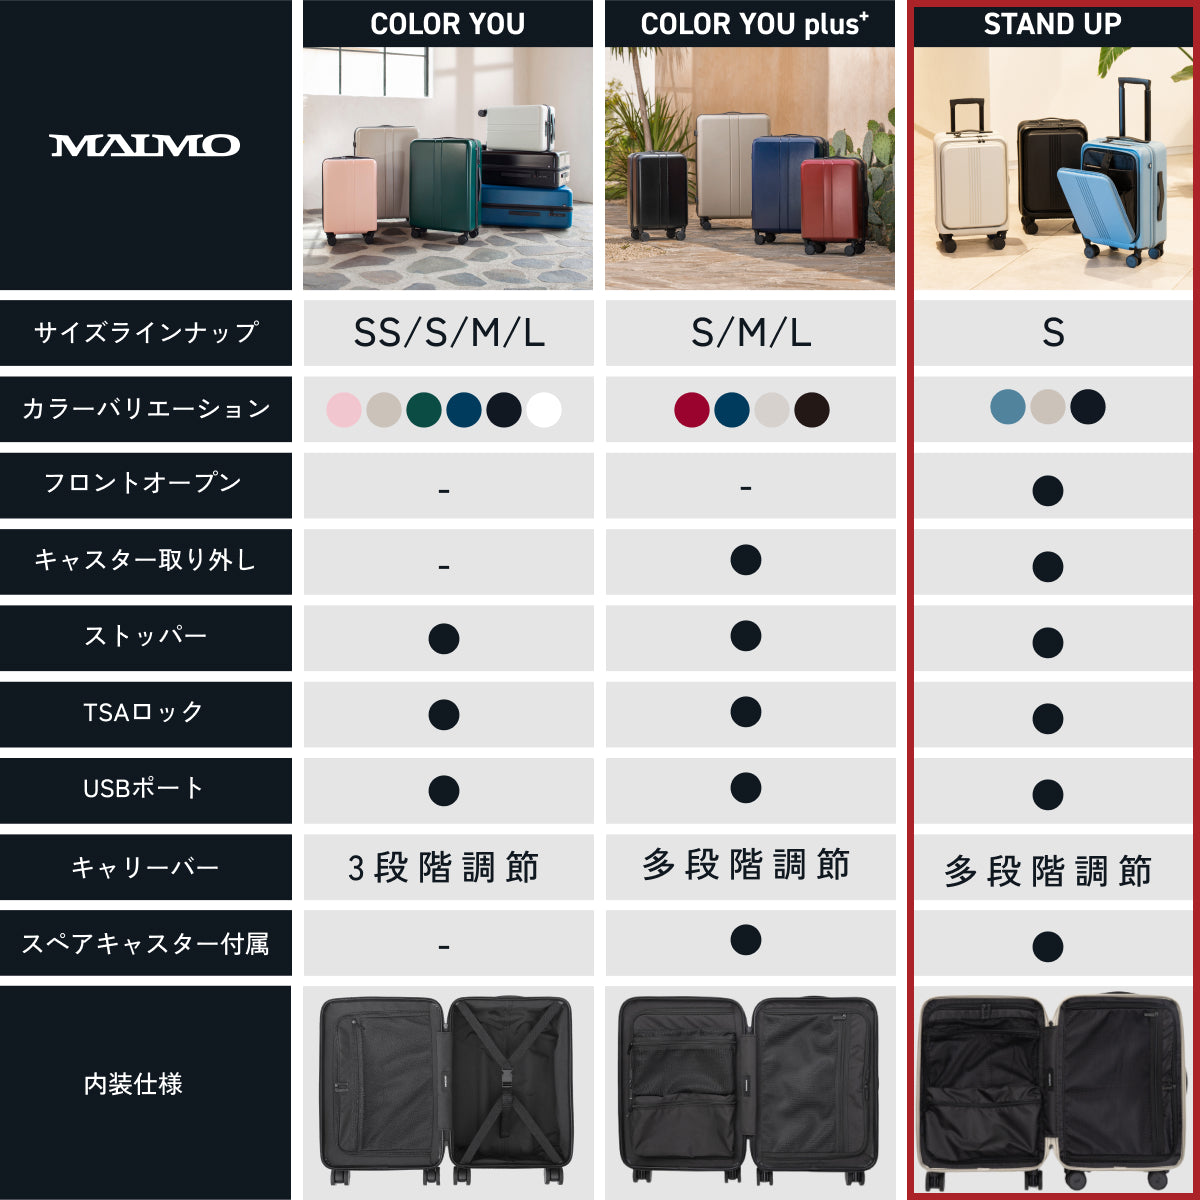 STAND UP ディープブラック Sサイズ – MAIMO公式オンラインショップ